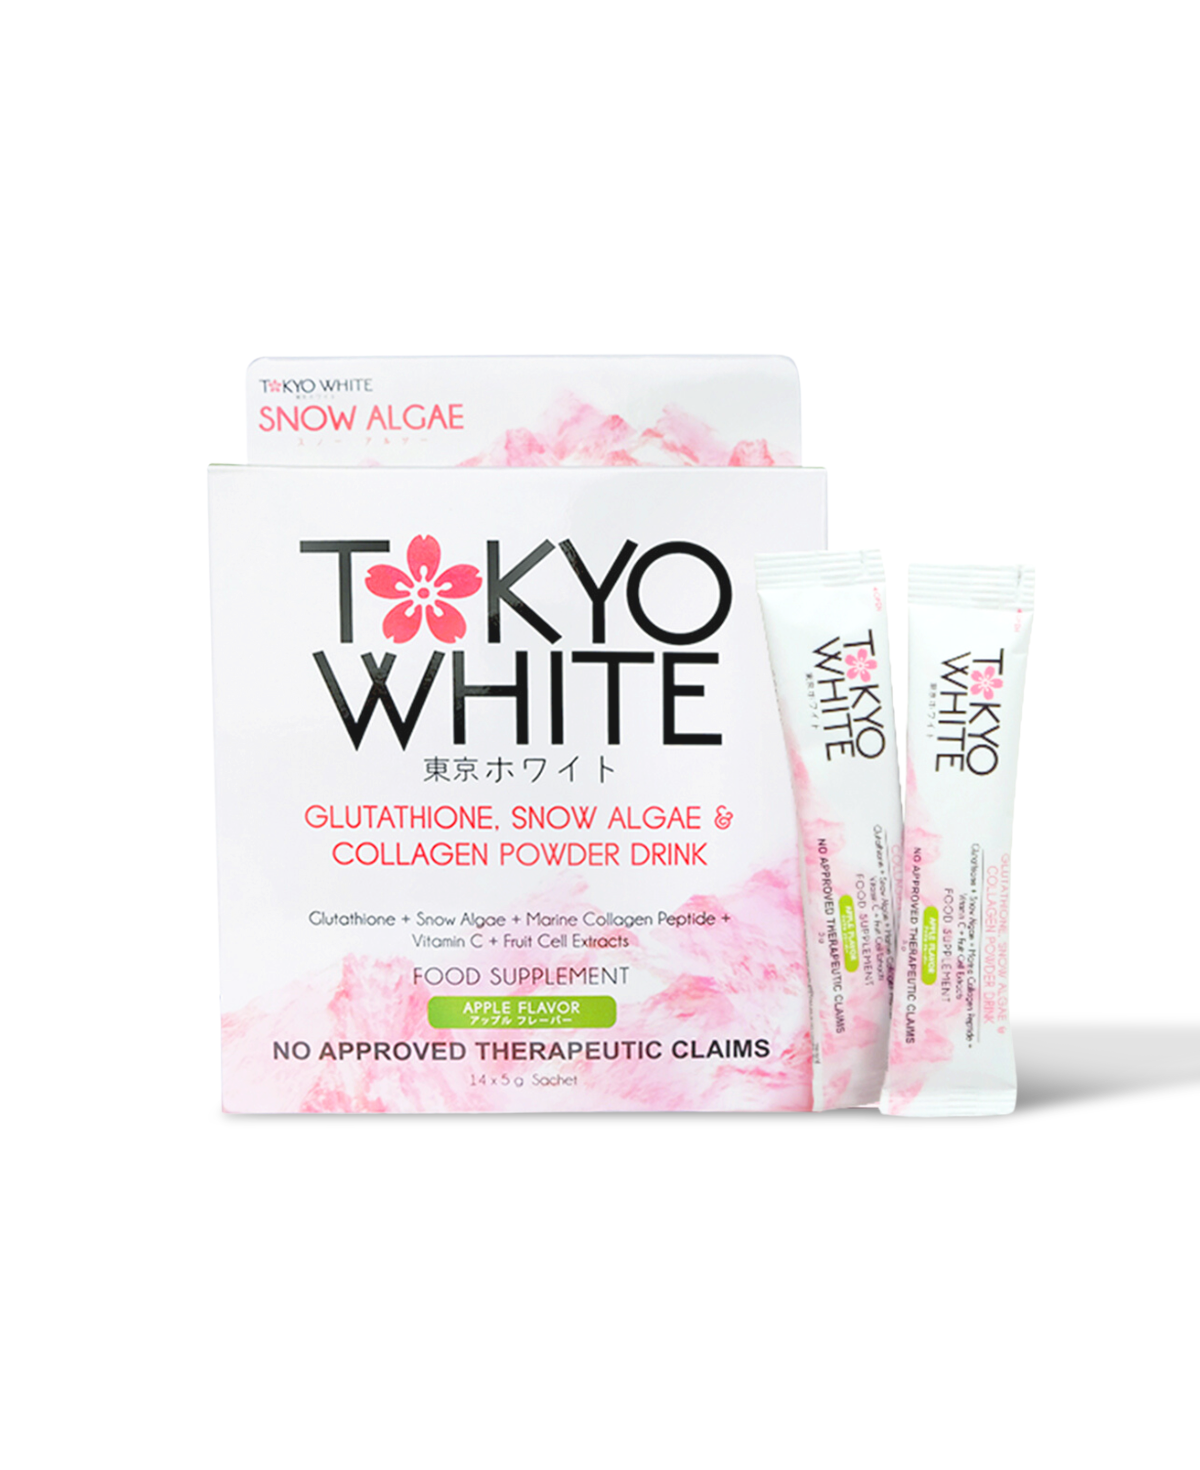 Tokyo White Anti-Aging Snow Algae Collagen Powder